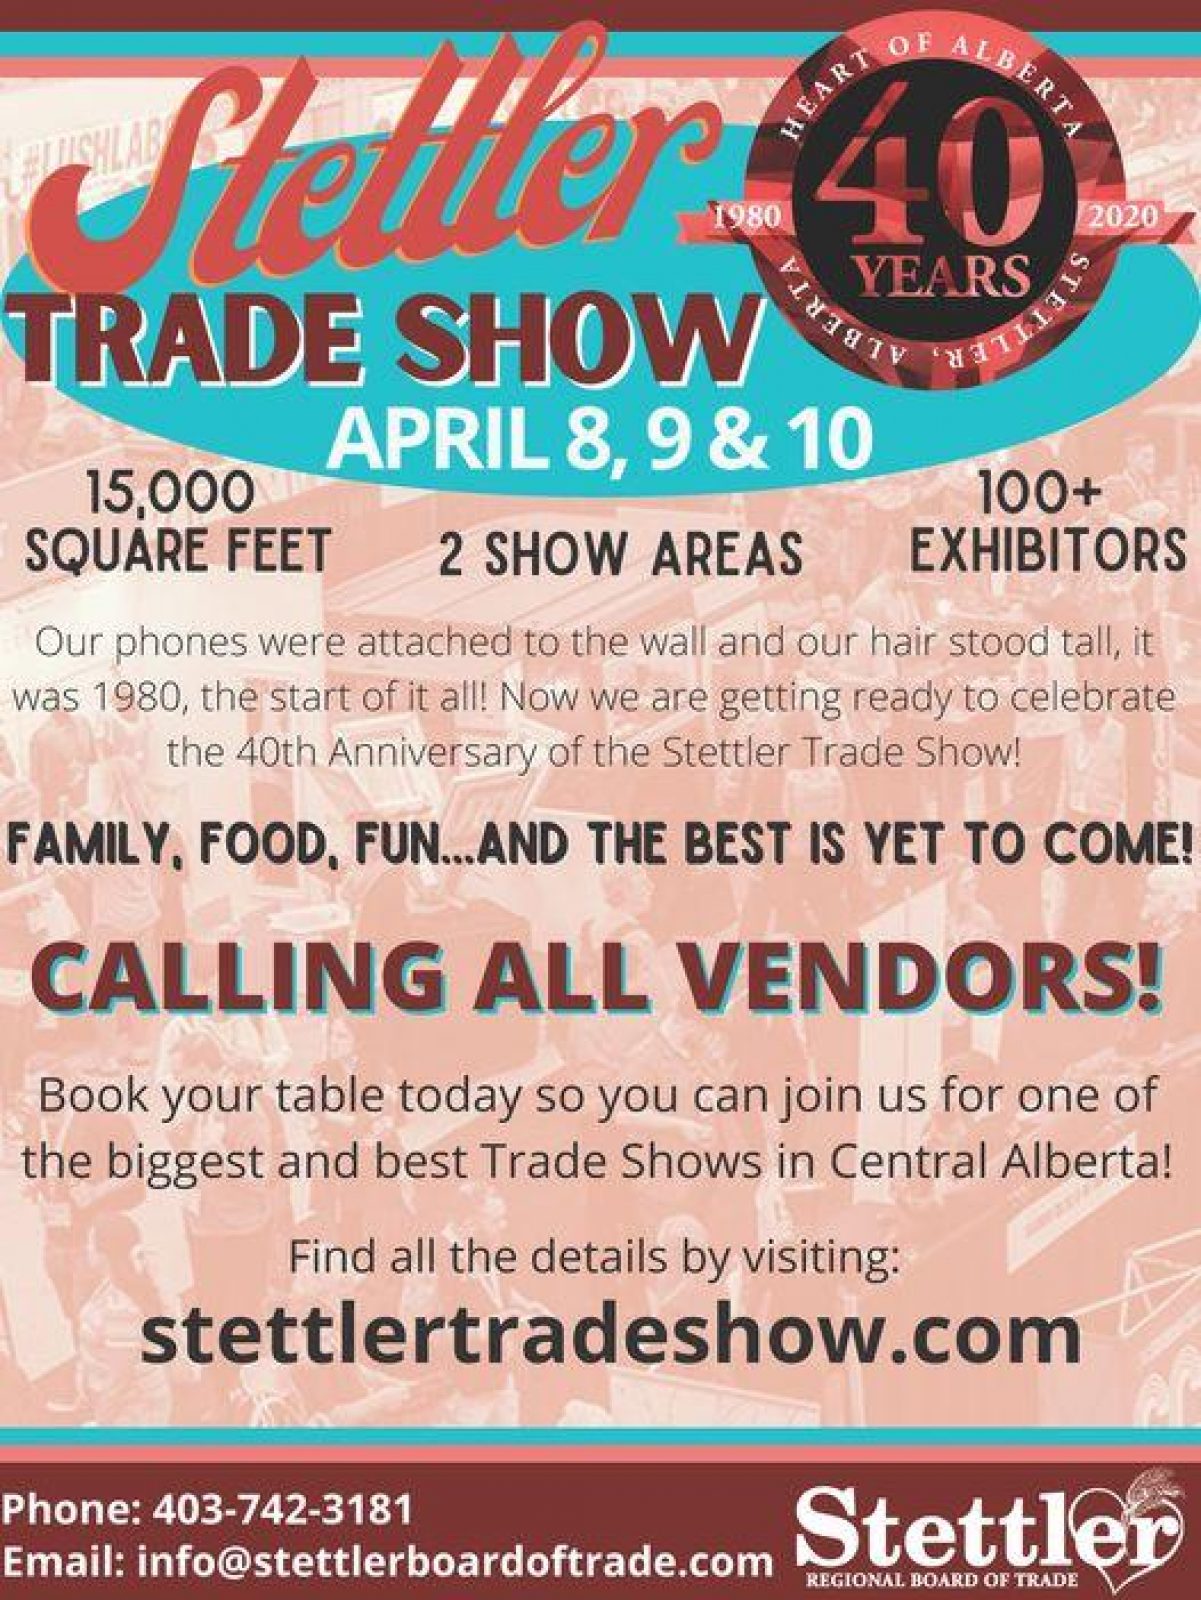 Stettler trades show vendors call